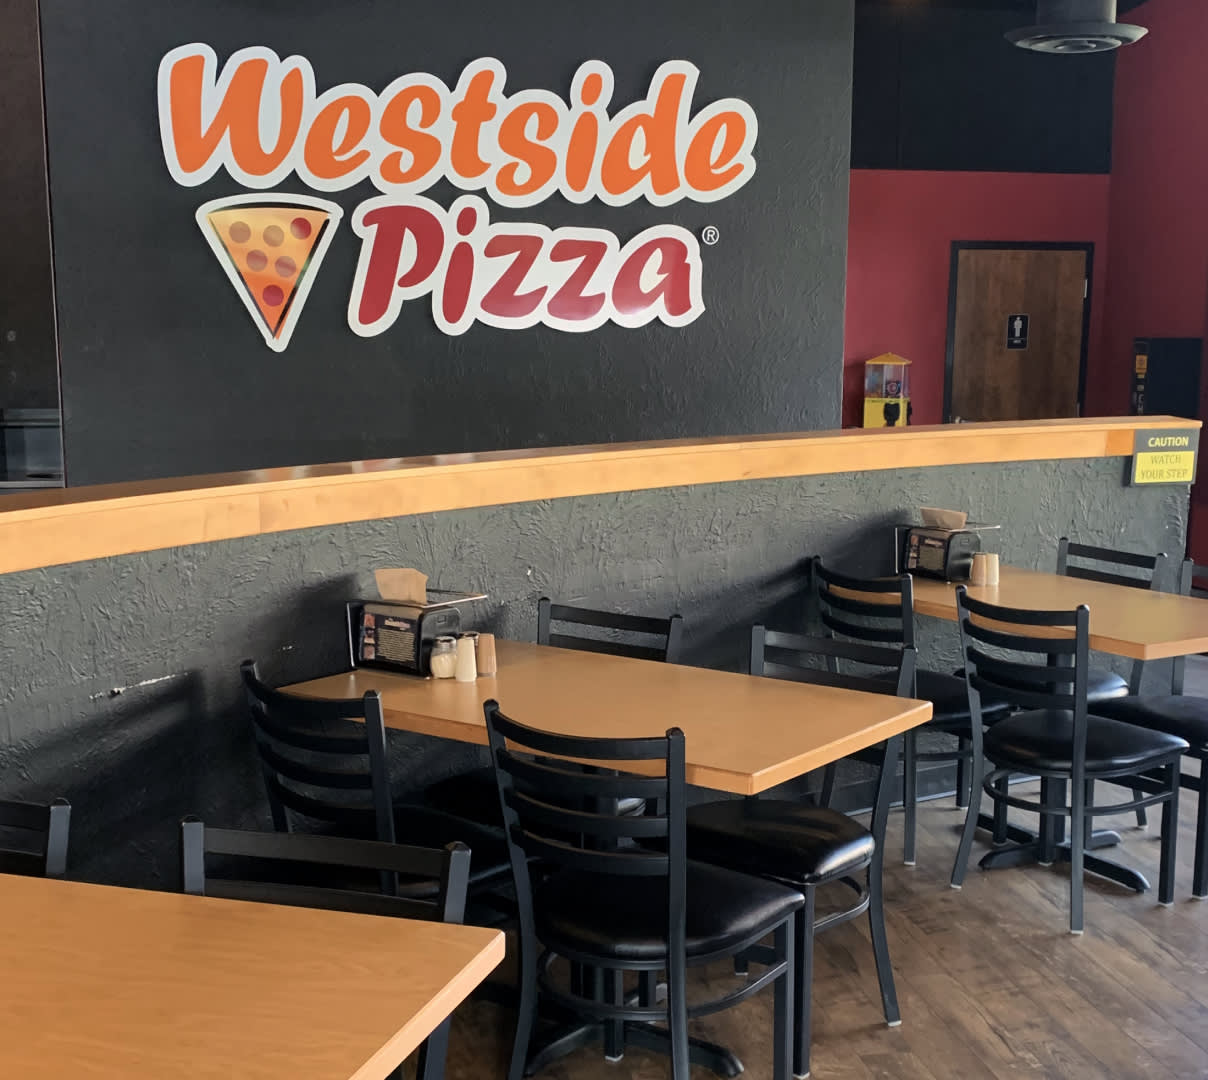 Westside Pizza doordash self-delivery